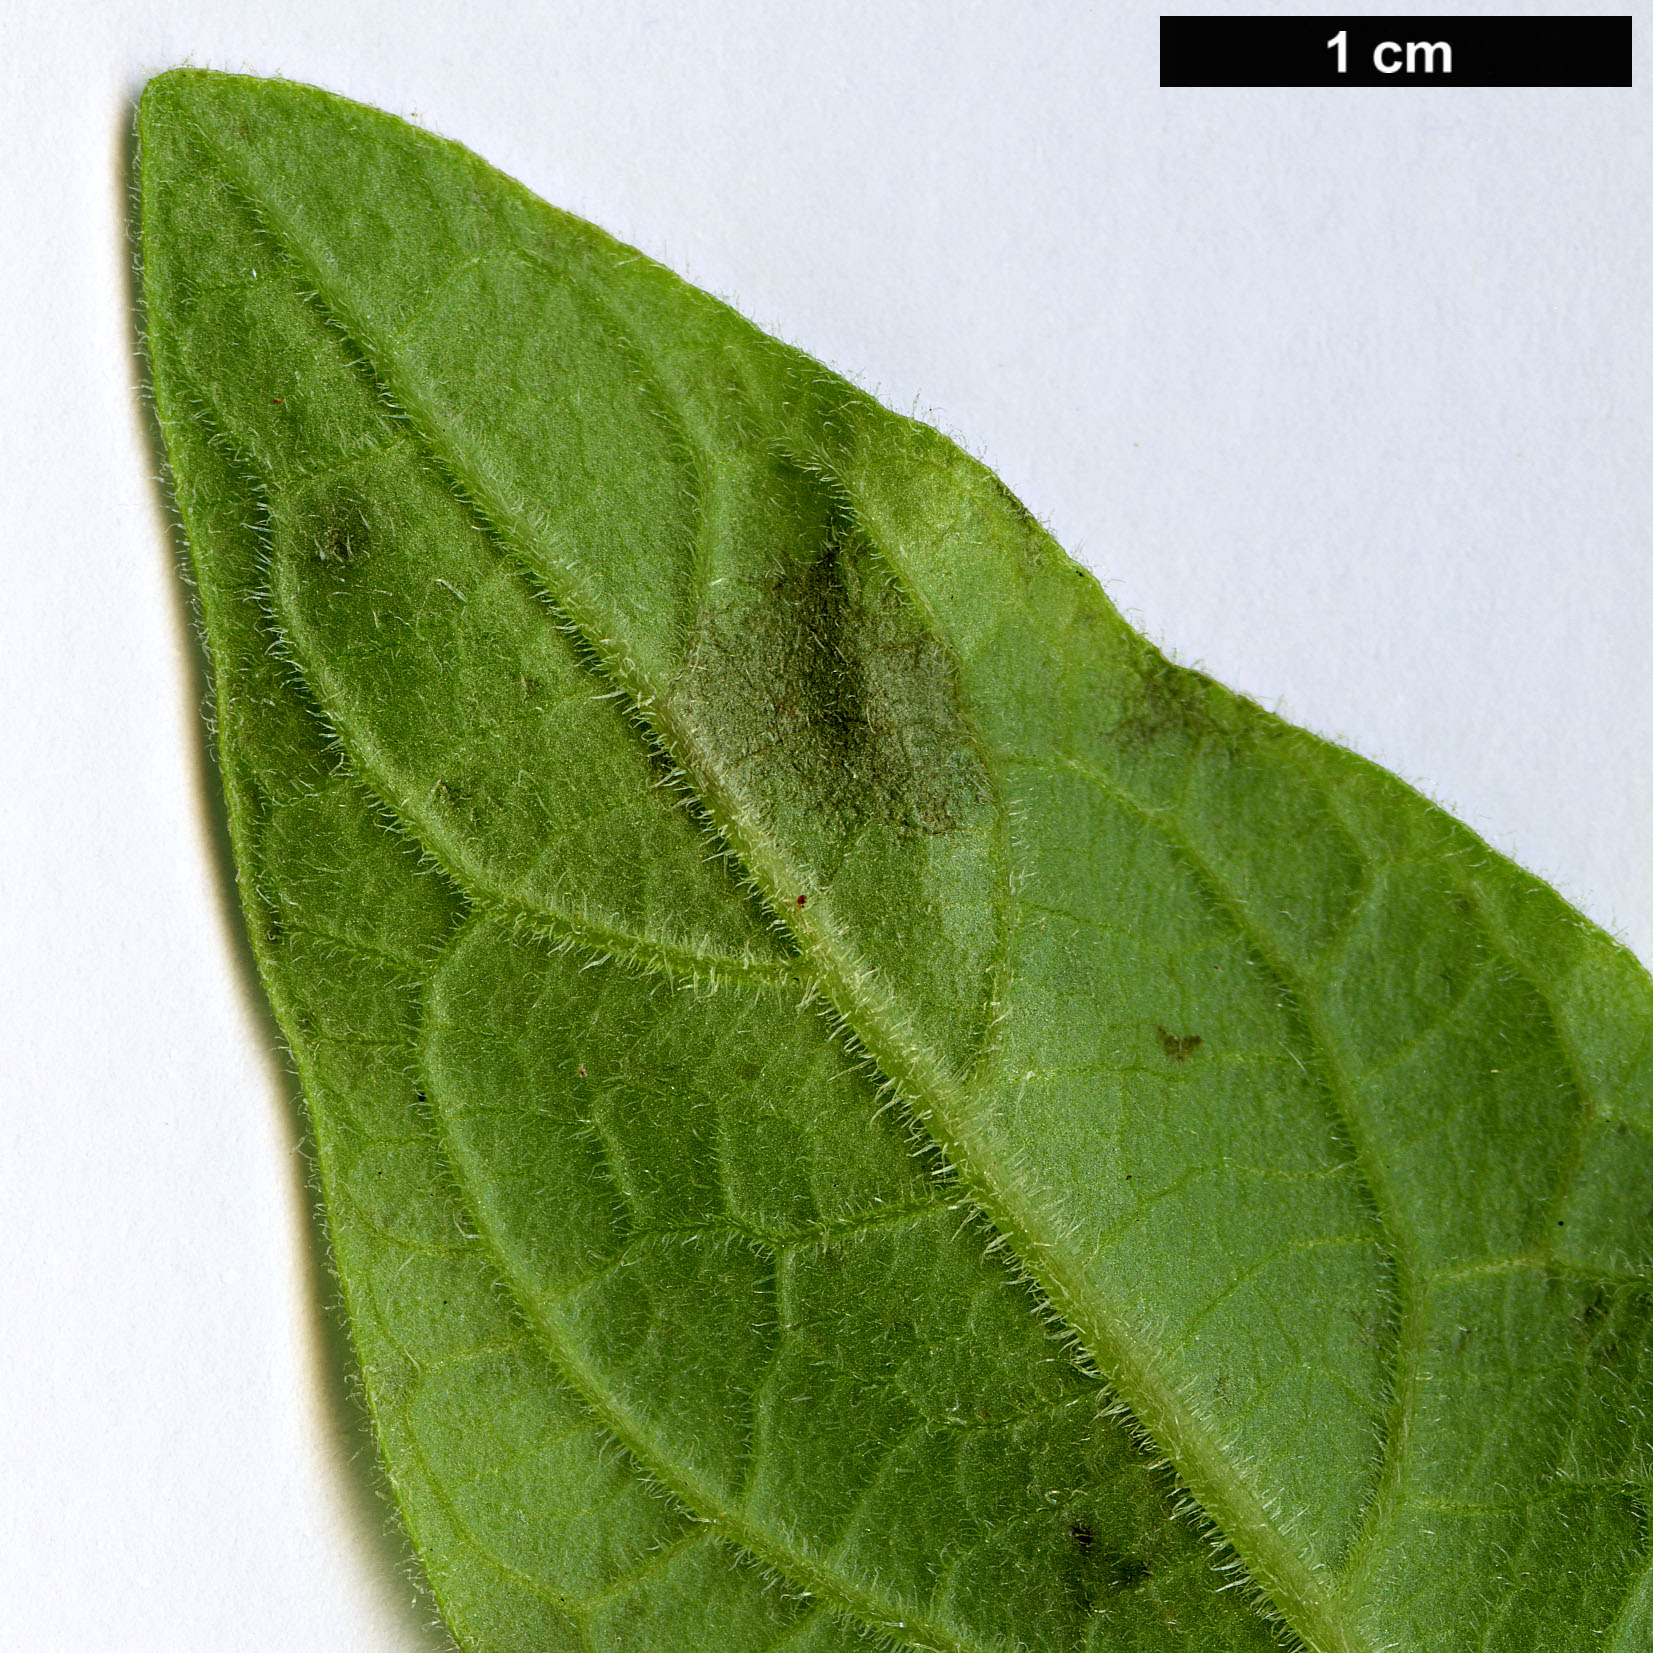 High resolution image: Family: Solanaceae - Genus: Brugmansia - Taxon: sanguinea